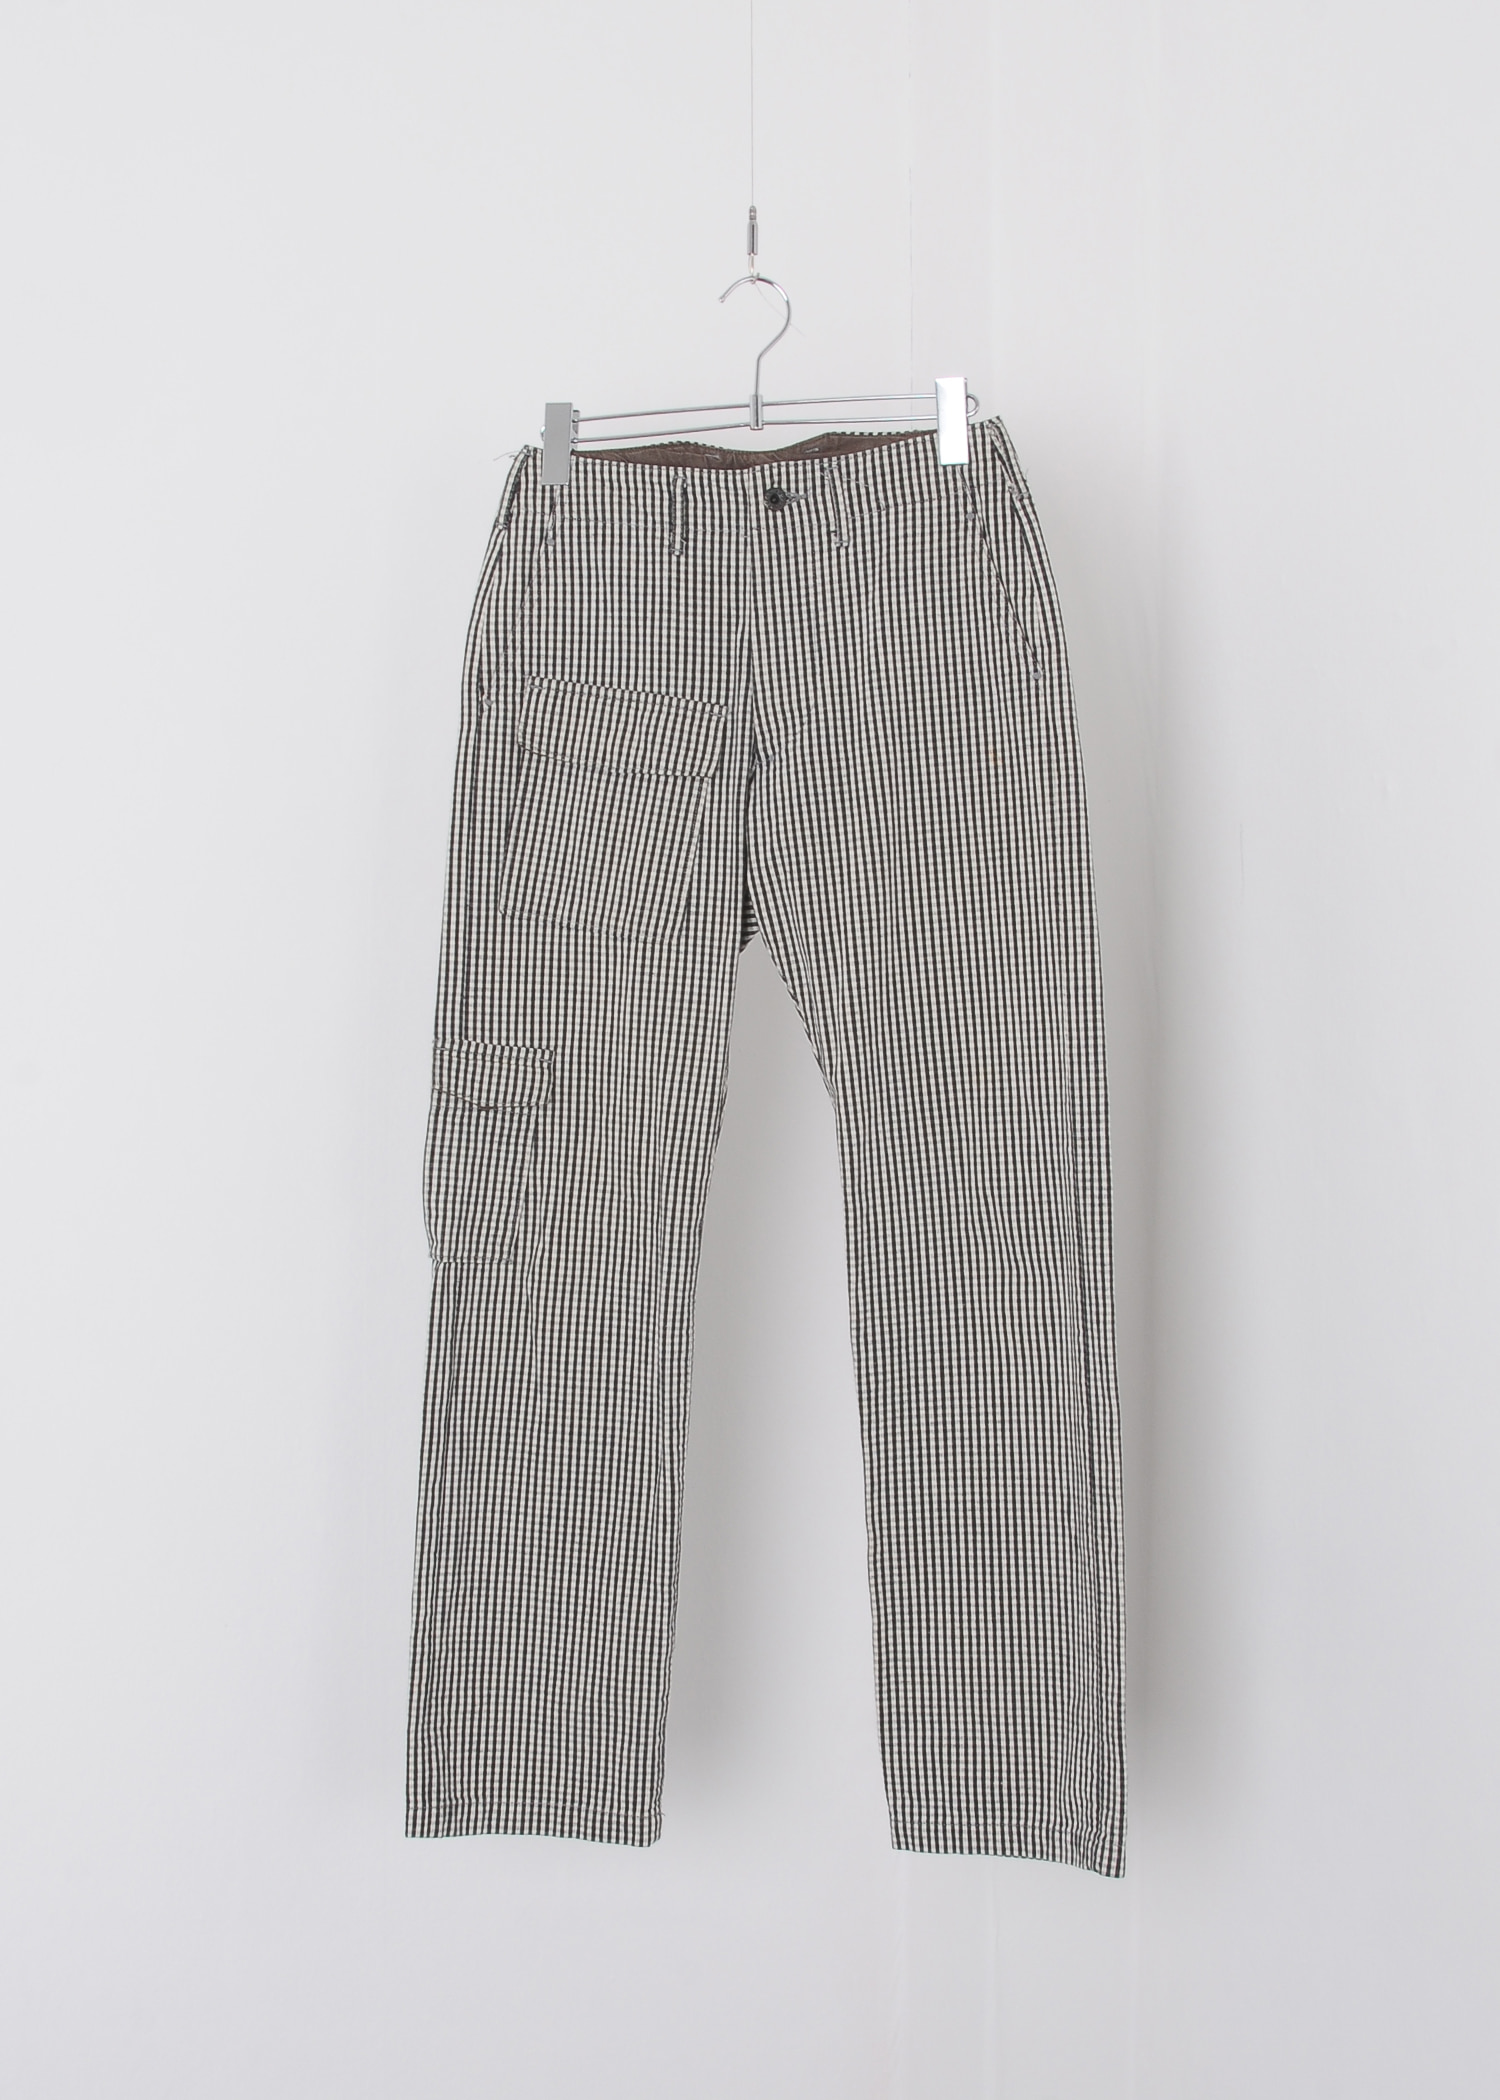 KAPITAL cotton pants